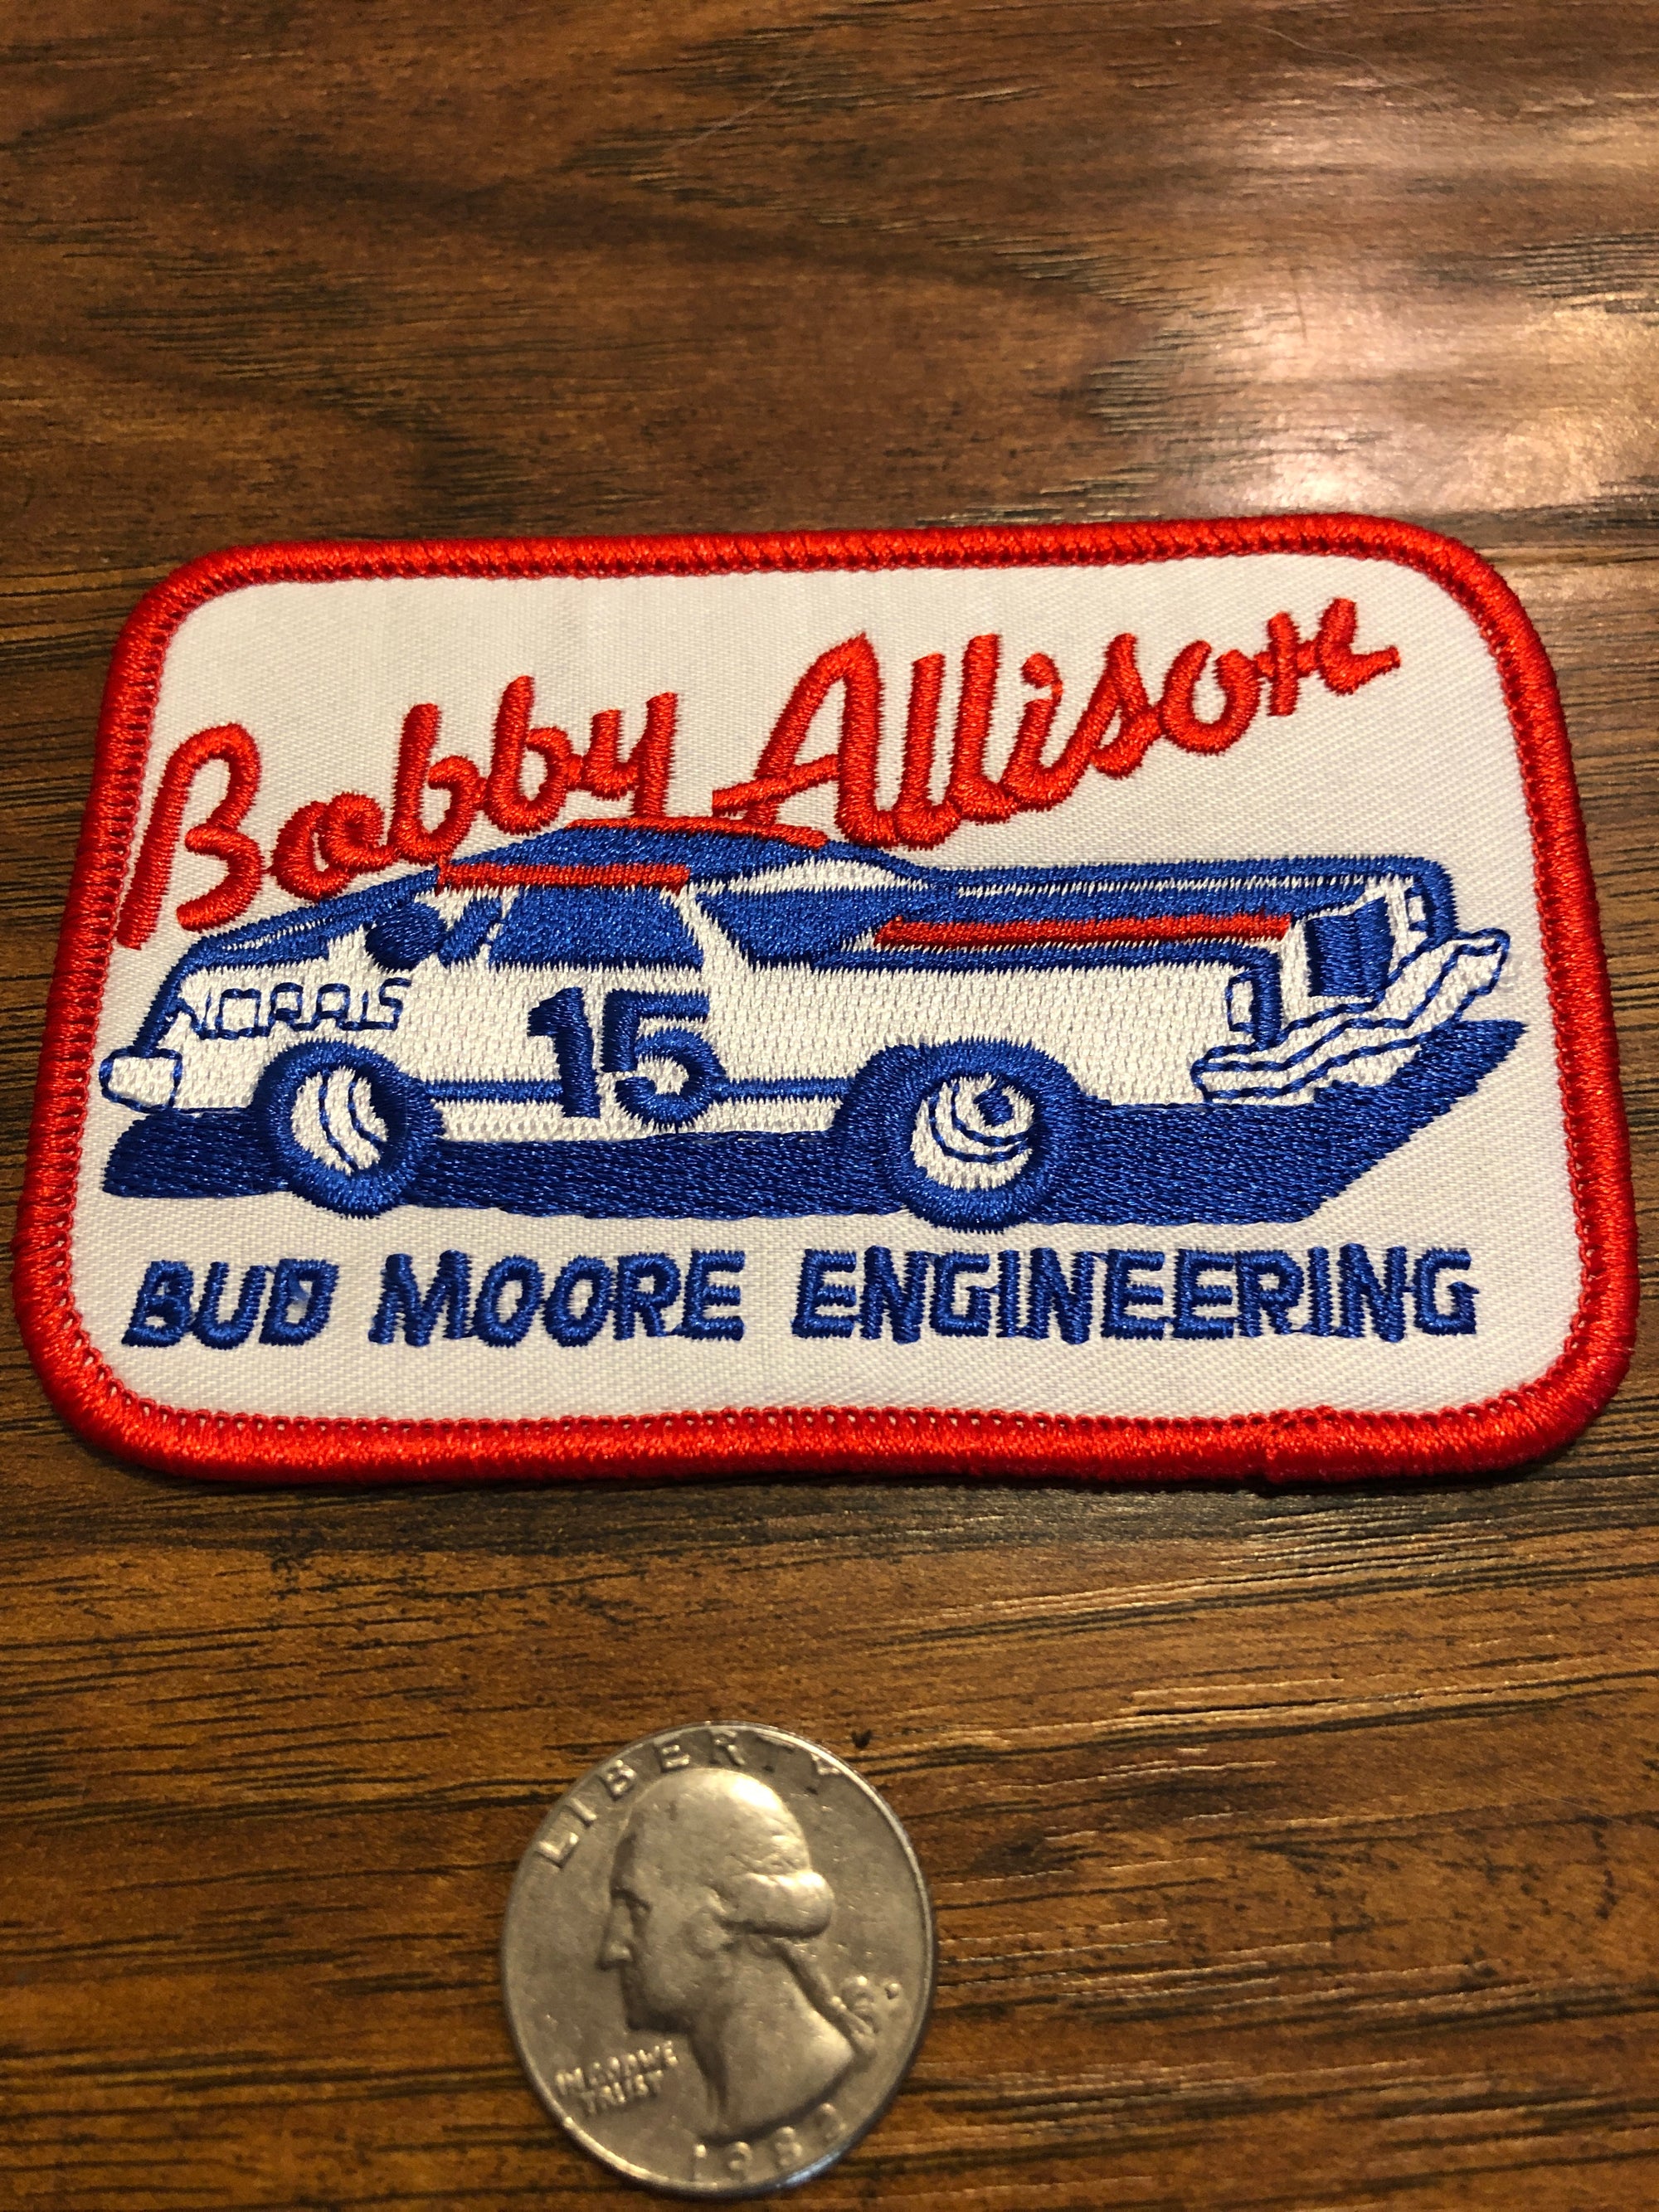 Bobby Allison, Racing, Race, Cars, NASCAR